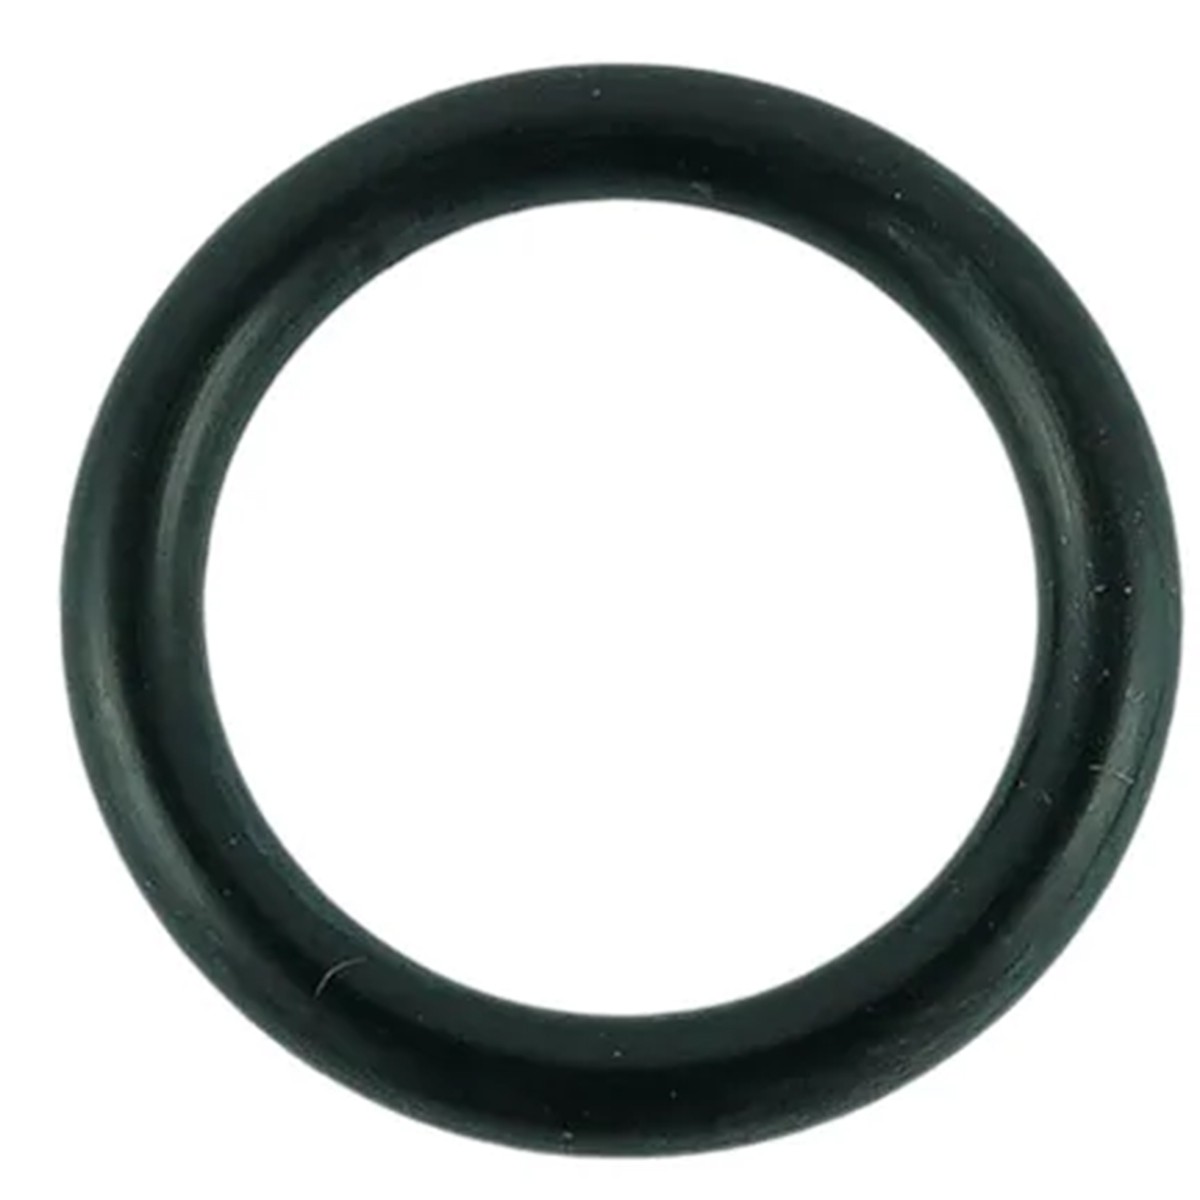 O-ring 13.80 x 2.40 mm / LS XJ25 / LS MT1.25 / S801014020 / 40029202